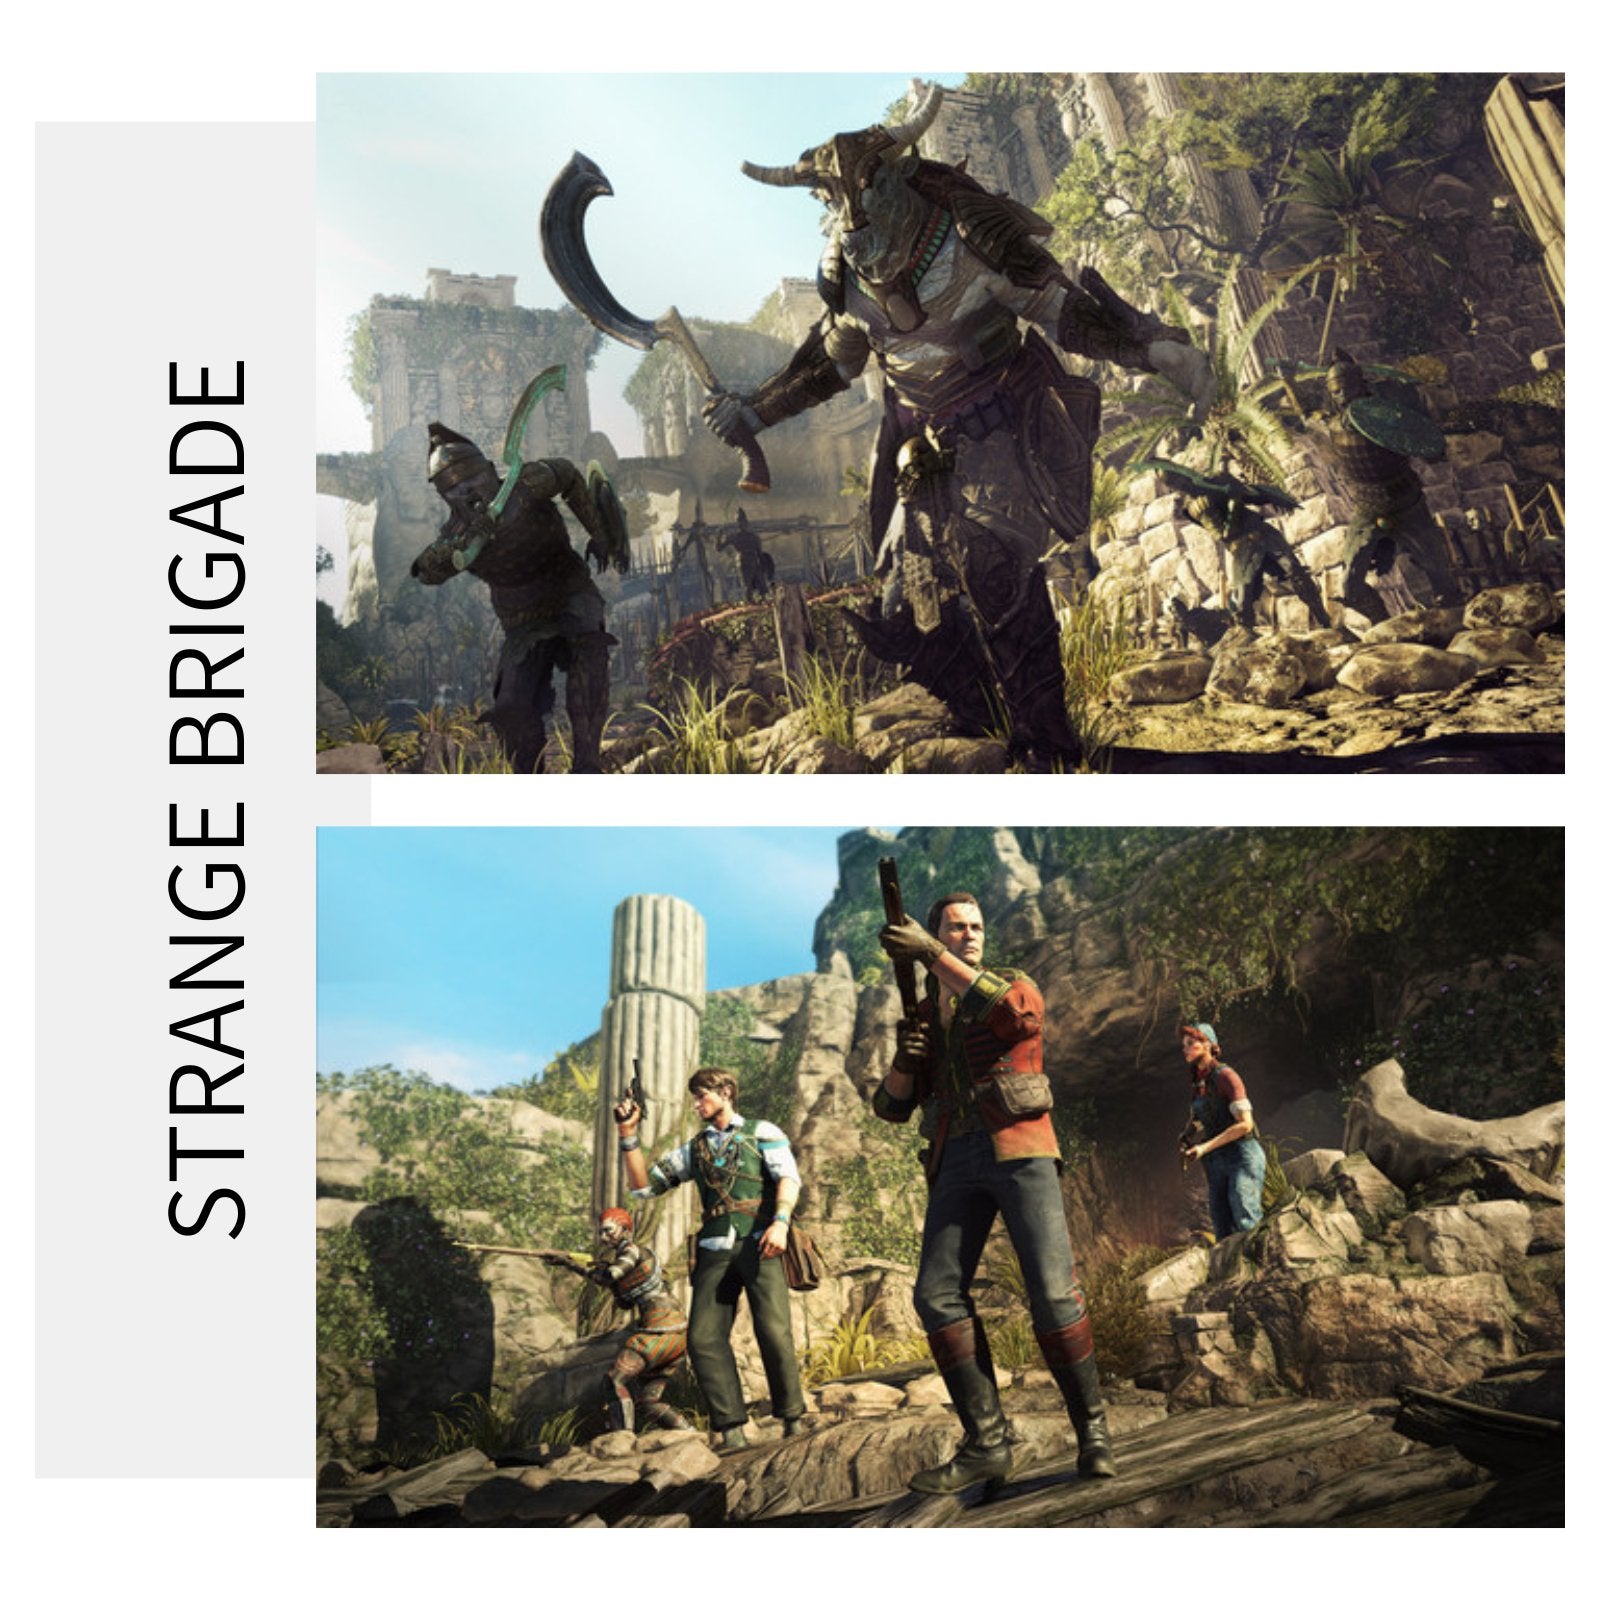 Strange Brigade | PC Game Steam Key - Killonyi